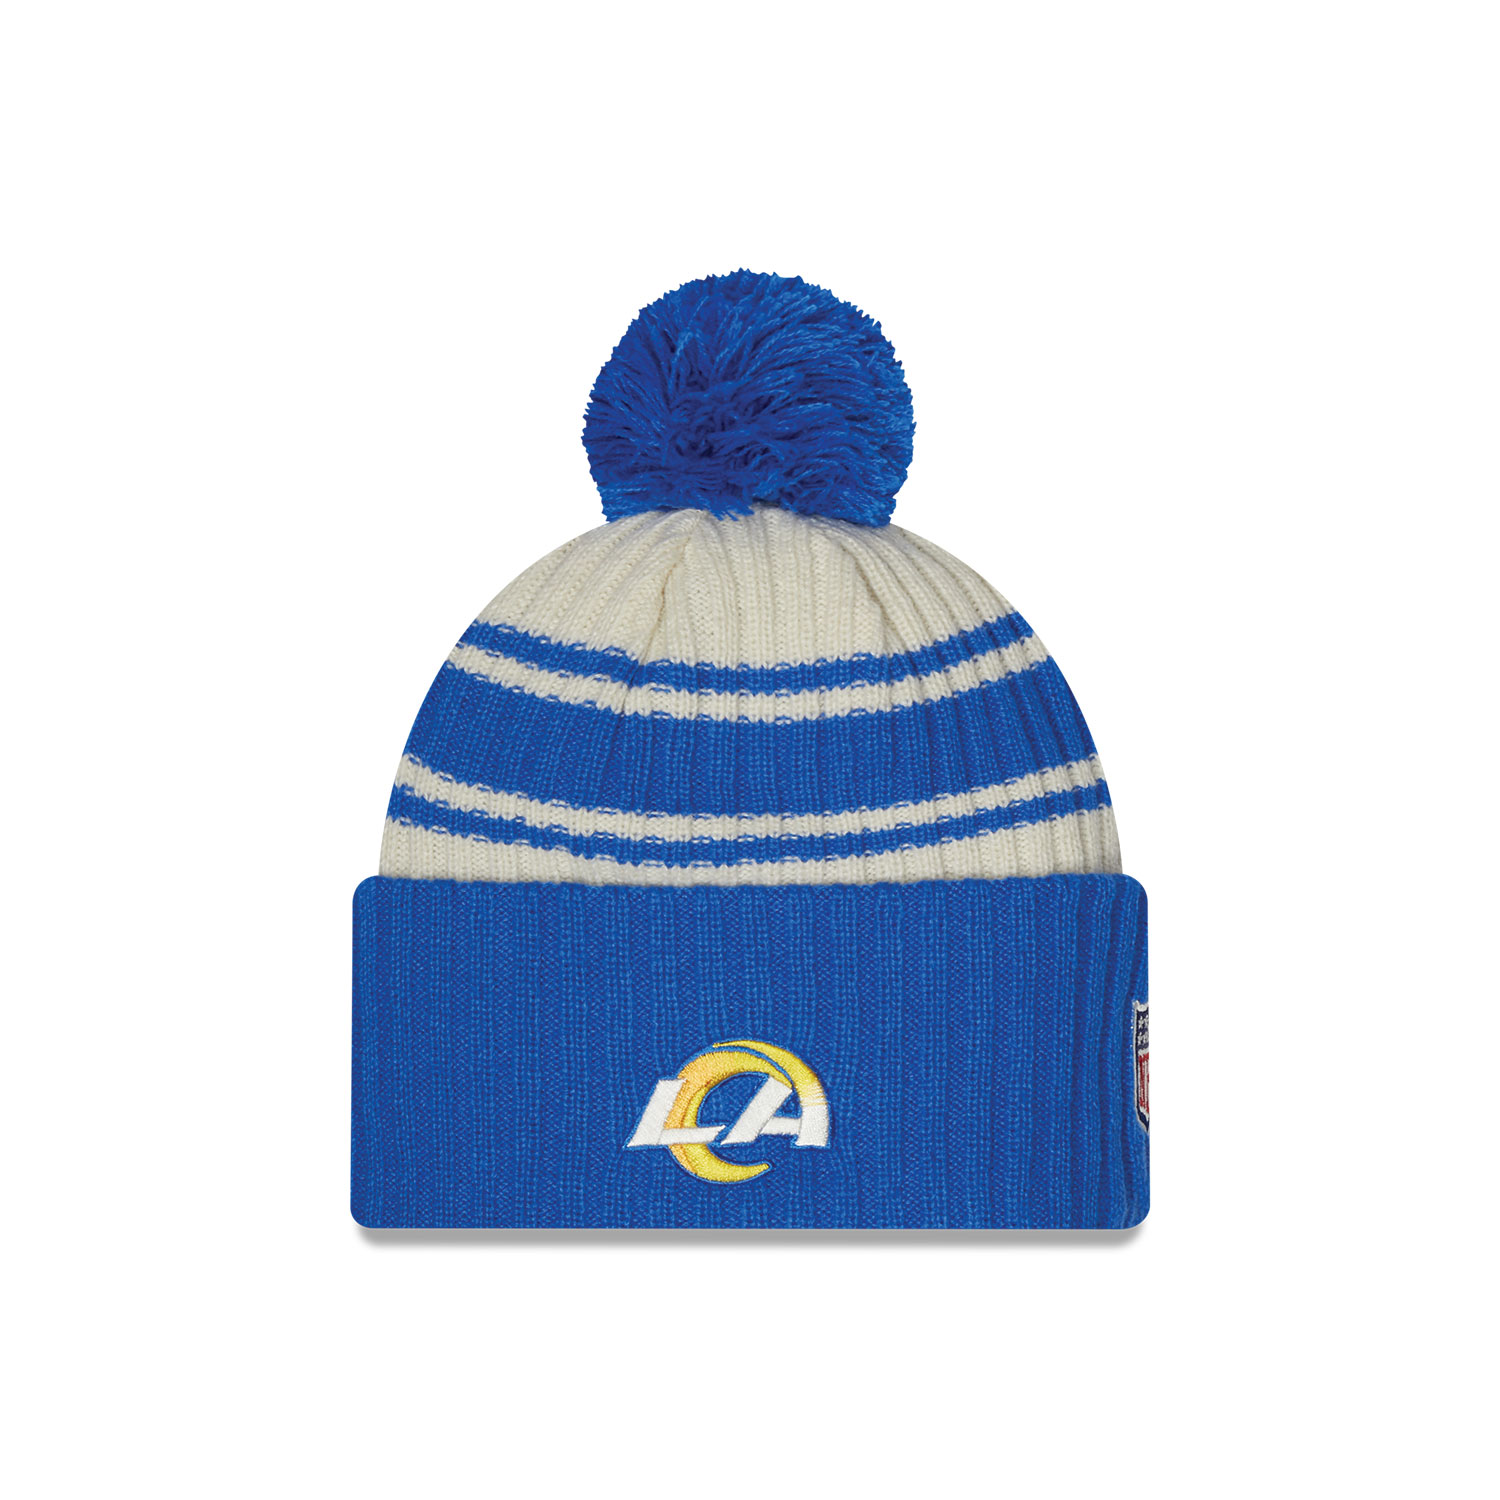 LA Rams NFL Sideline Blue Beanie Hat